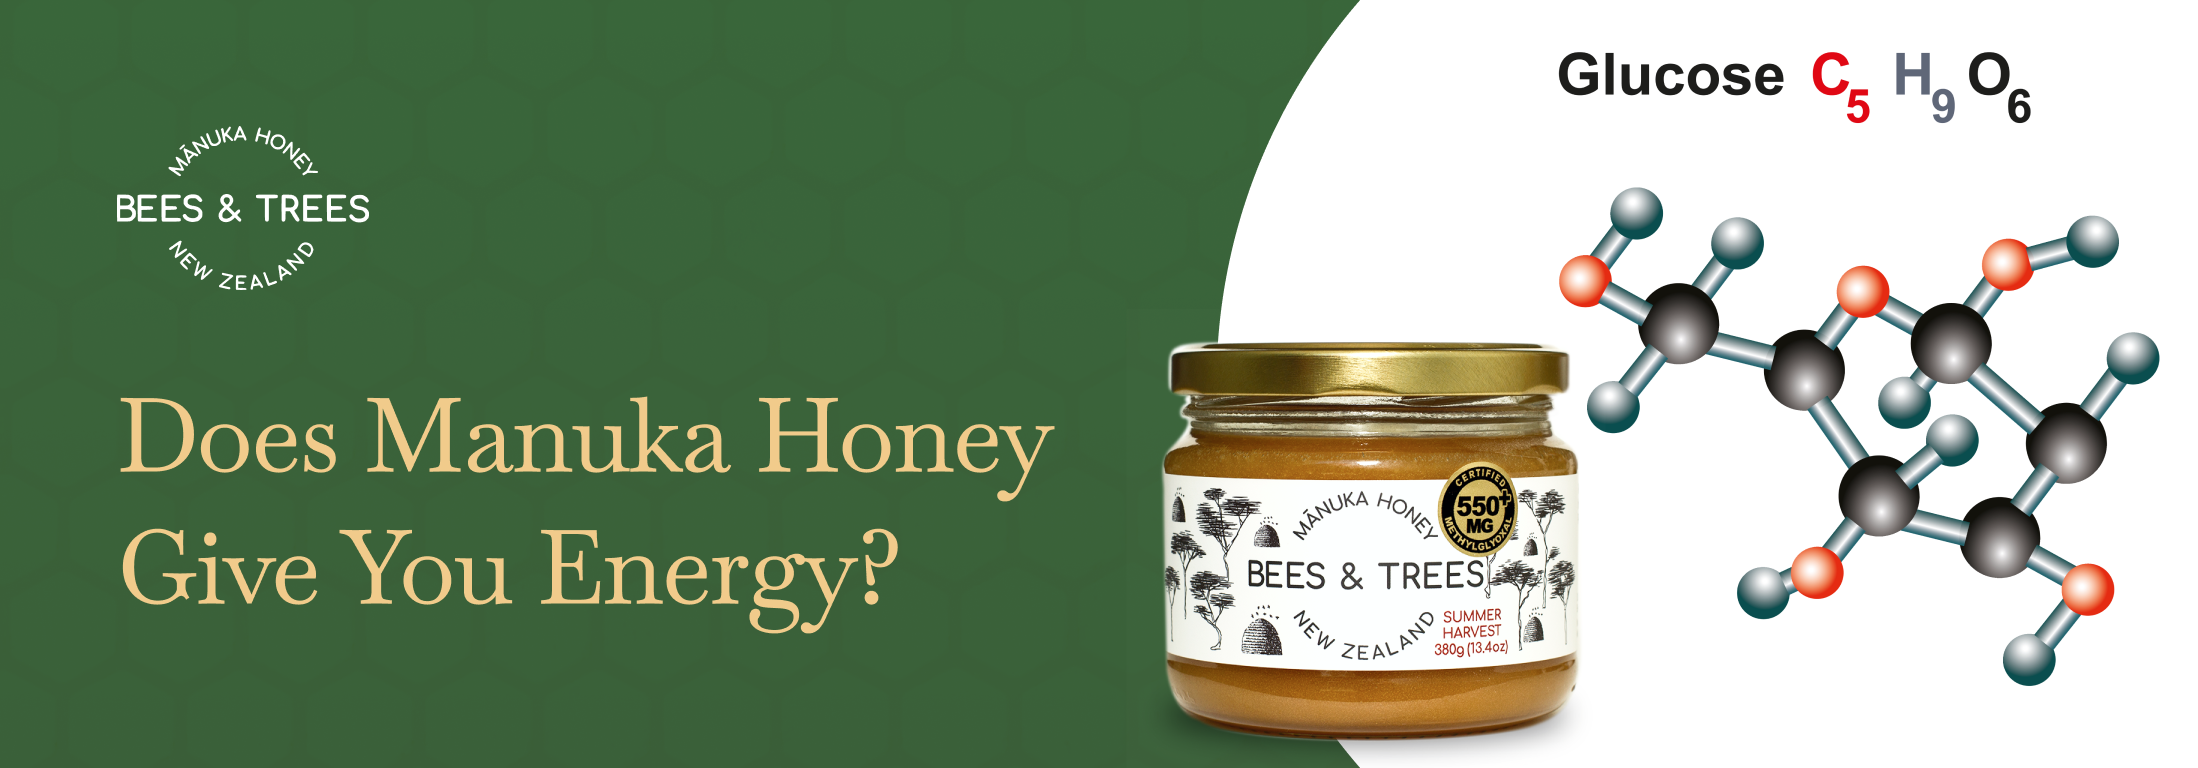 Does Manuka Honey Give You Energy?